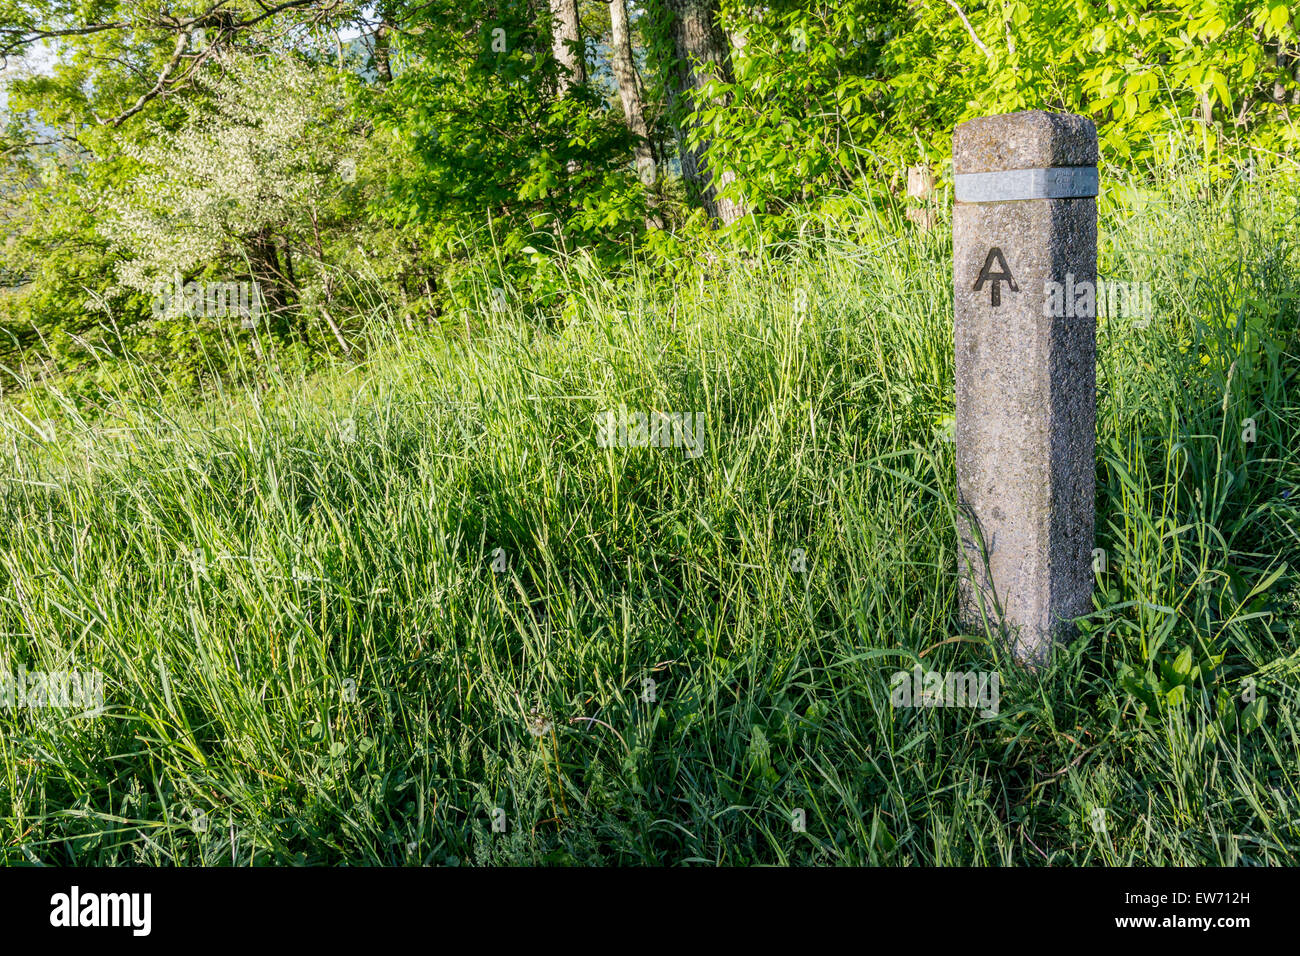 El Appalachian Trail es abierto con estos marcadores de piedra en cada cruce con Skyline Drive a través del Parque Nacional de Shenandoah Foto de stock